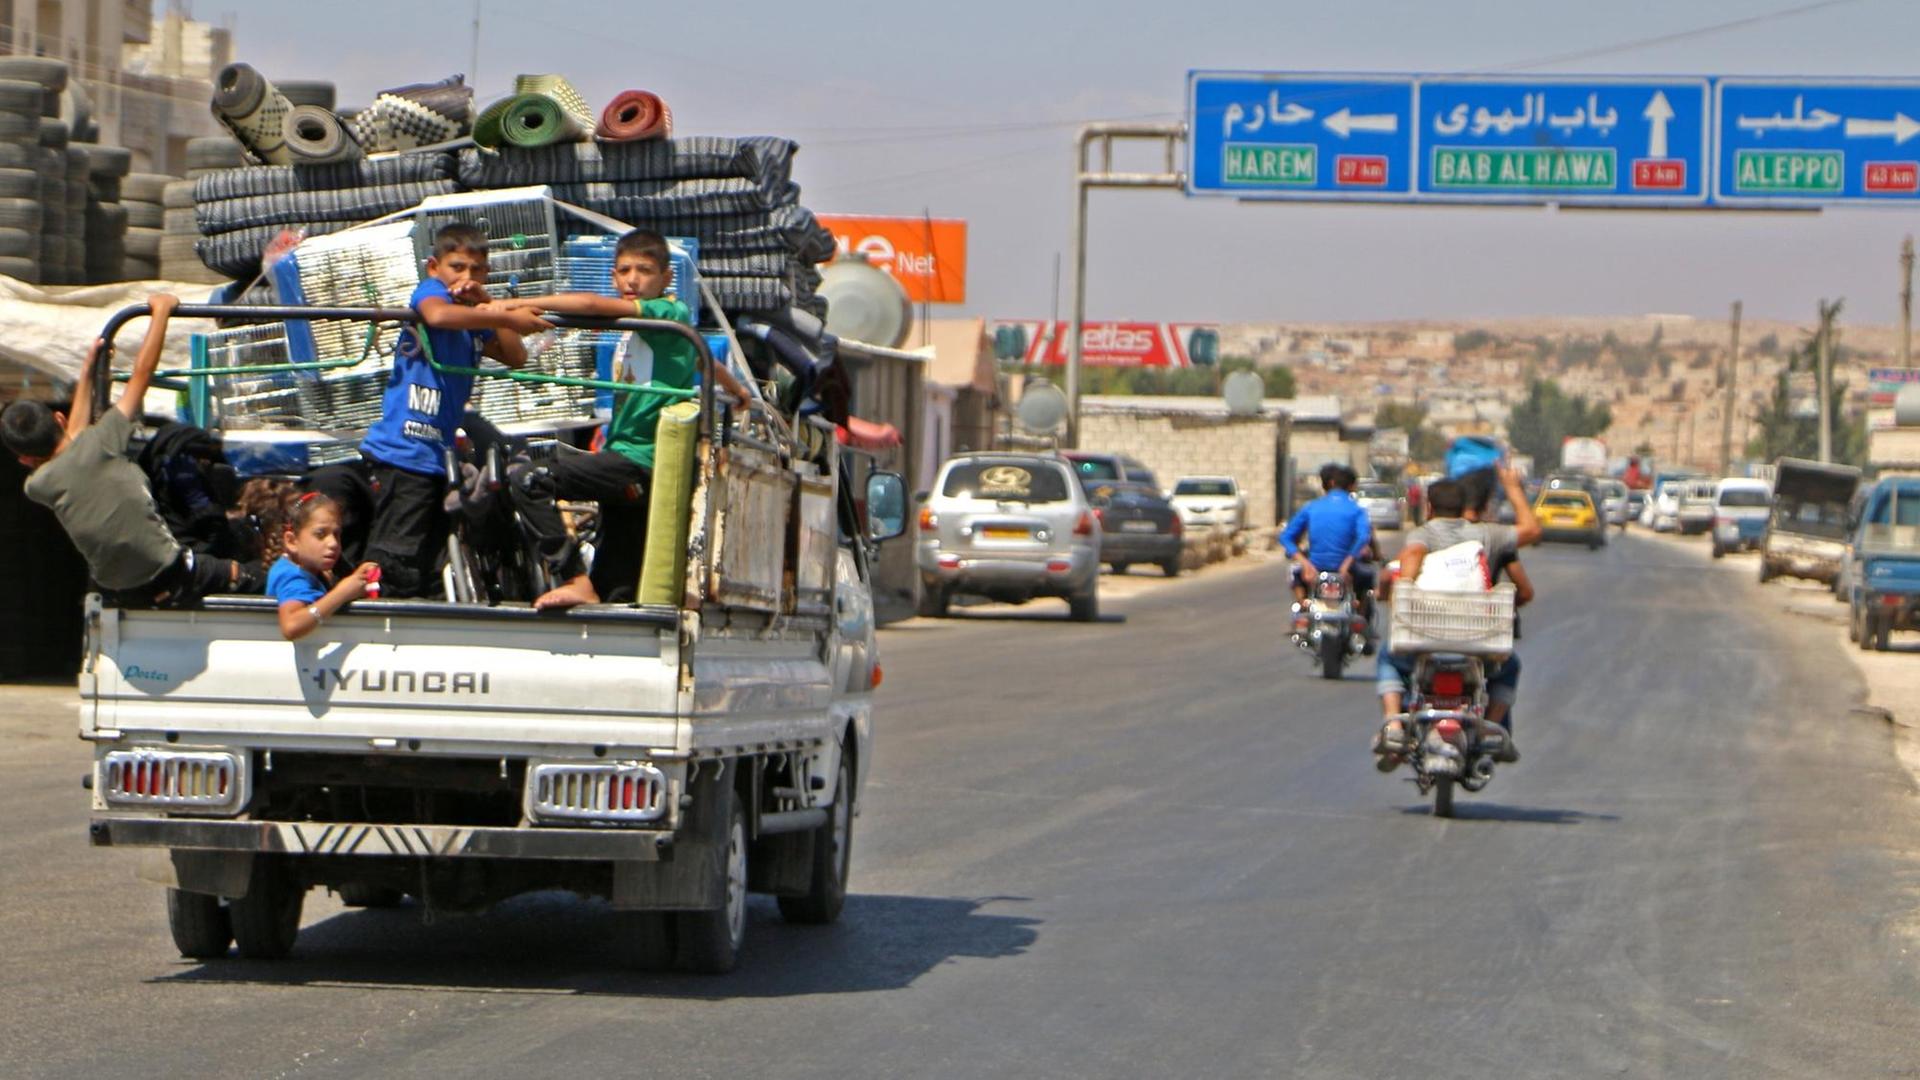 Auf einem Lastwagen hocken Kinder neben Gepäck, die Familie fährt aus Idlib in Richtung Norden.